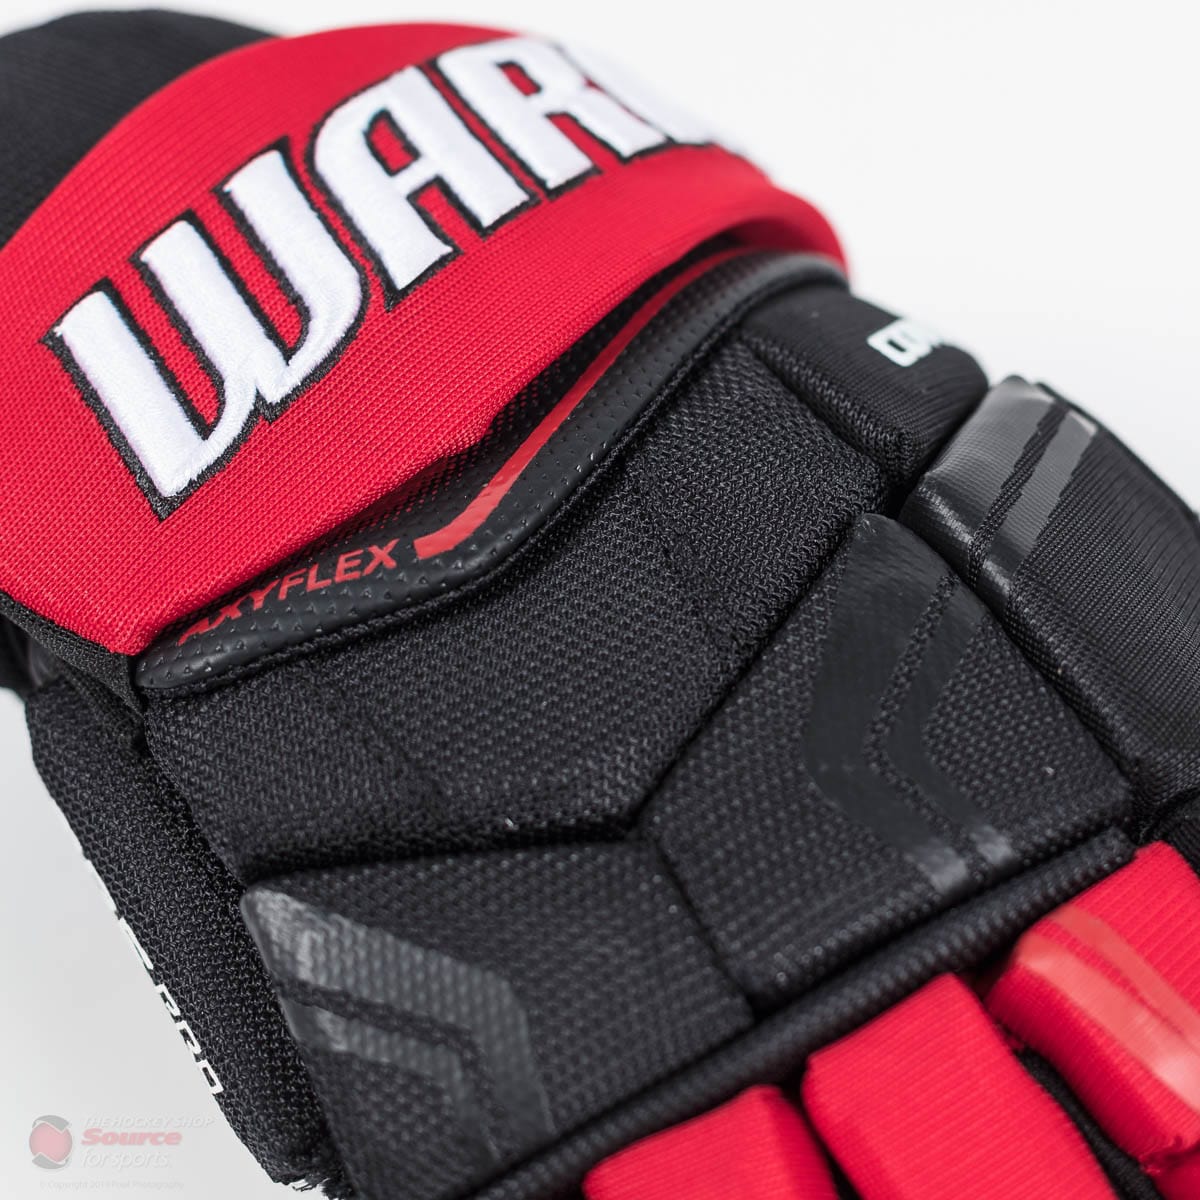 Warrior Covert QRE Pro Junior Hockey Gloves